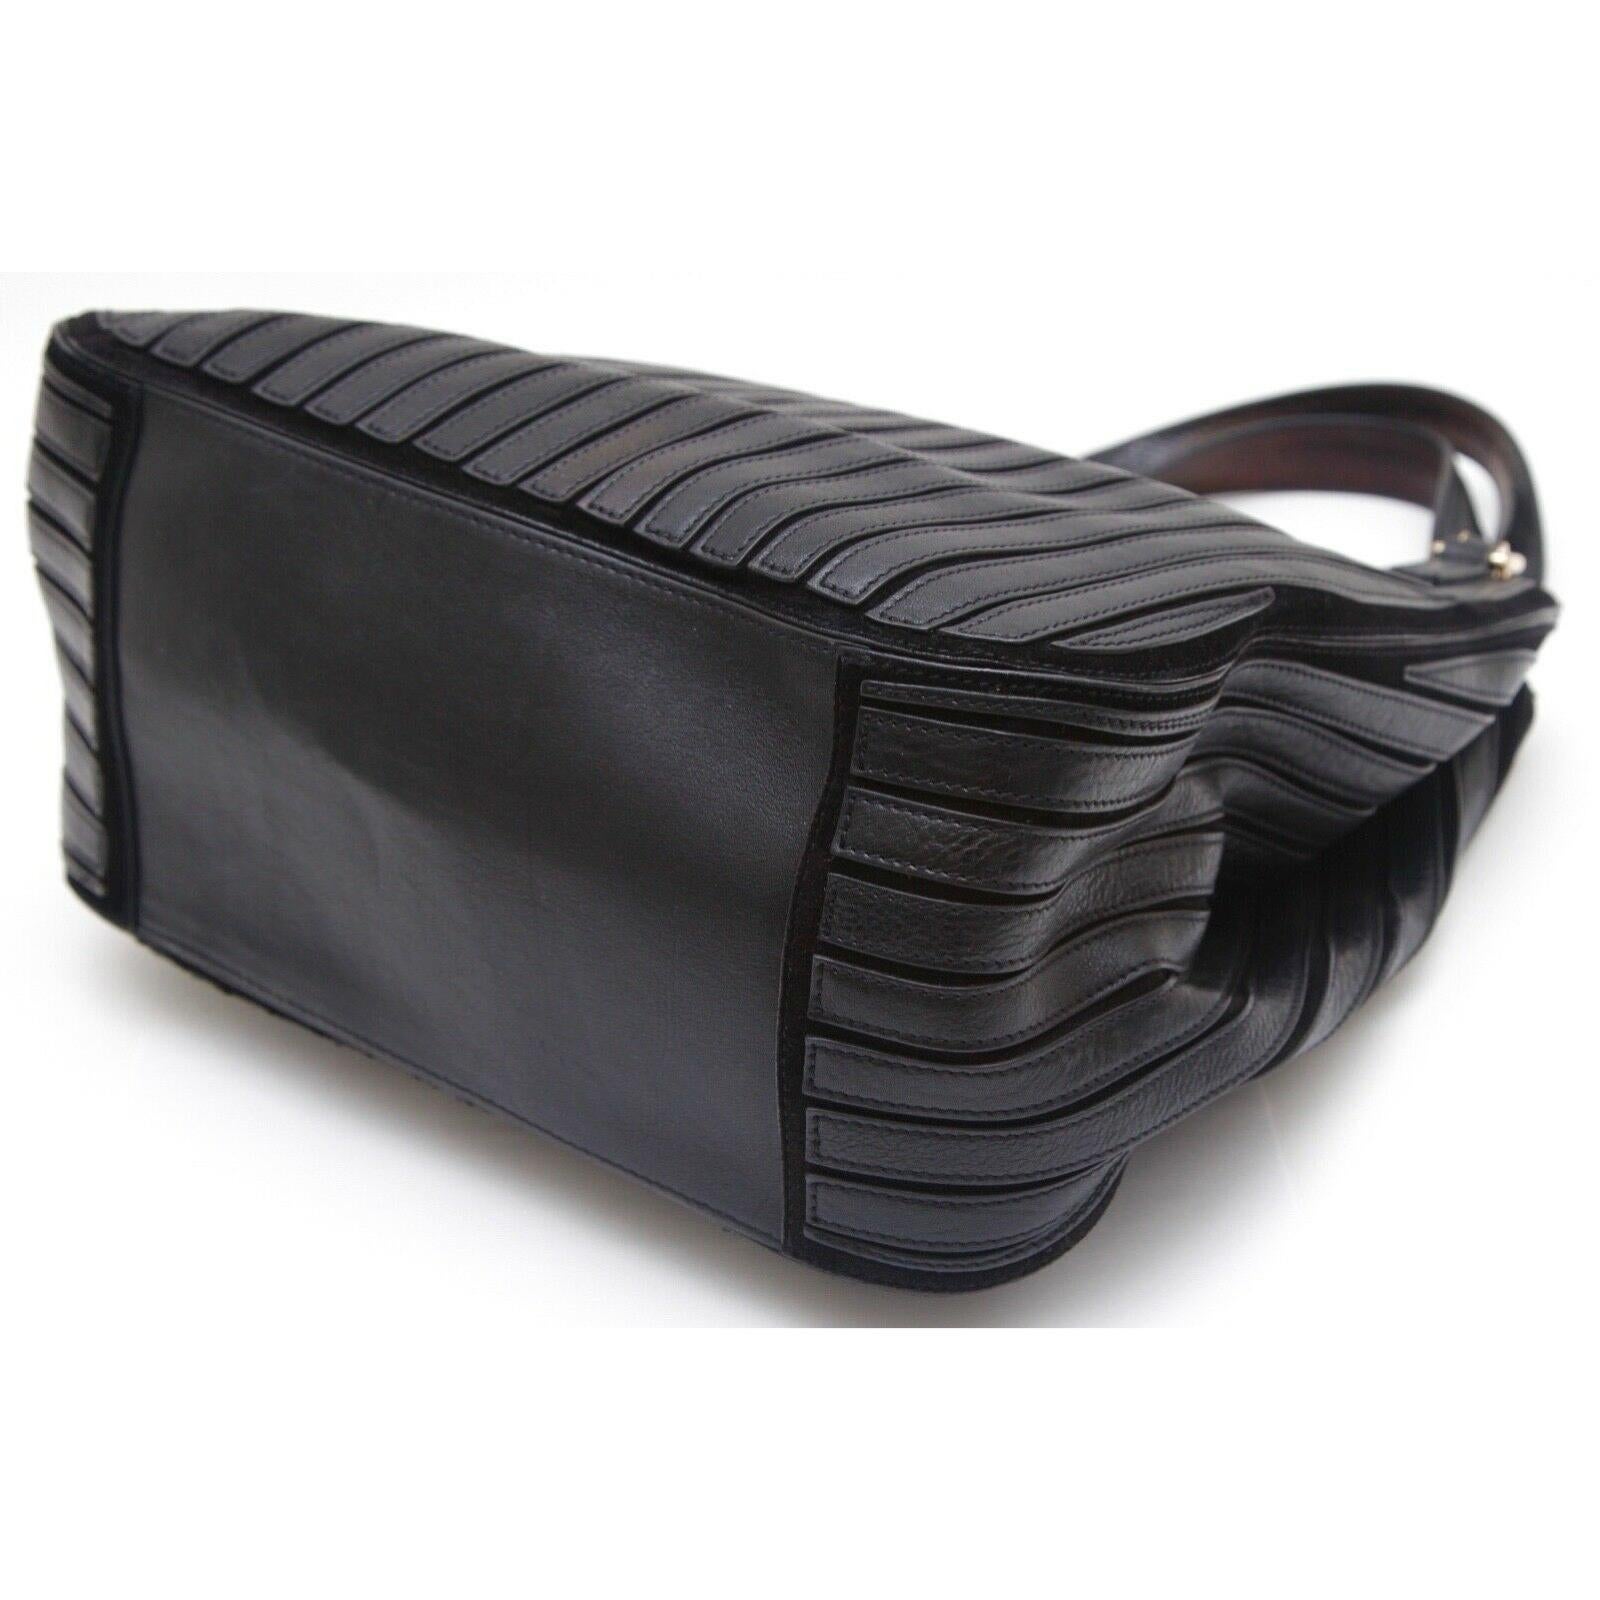 ANYA HINDMARCH Shoulder Bag Black Leather Suede BELVEDERE Hobo Gold Canvas Strap For Sale 2